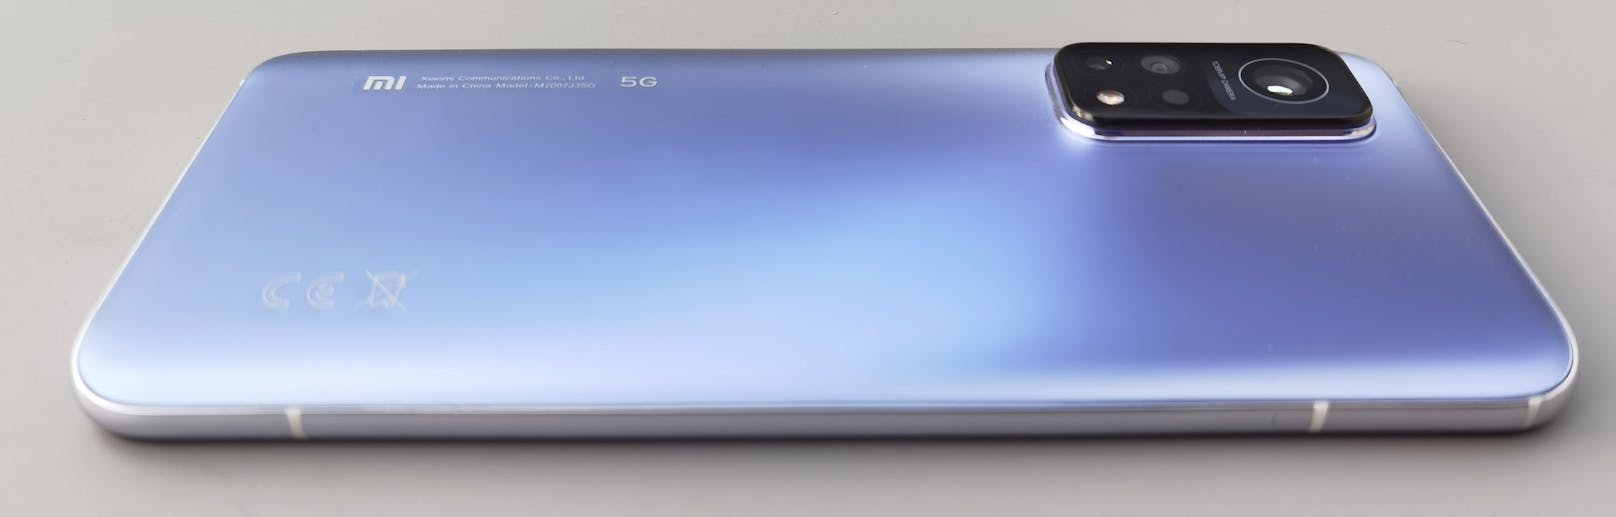 Im <em>"Heute"</em>-Test zeigt sich das Mi 10T Pro 5G als sehr großes und Smartphone mit breiteren Rändern und dickerer Ausführung, als es einige Konkurrenten bieten.